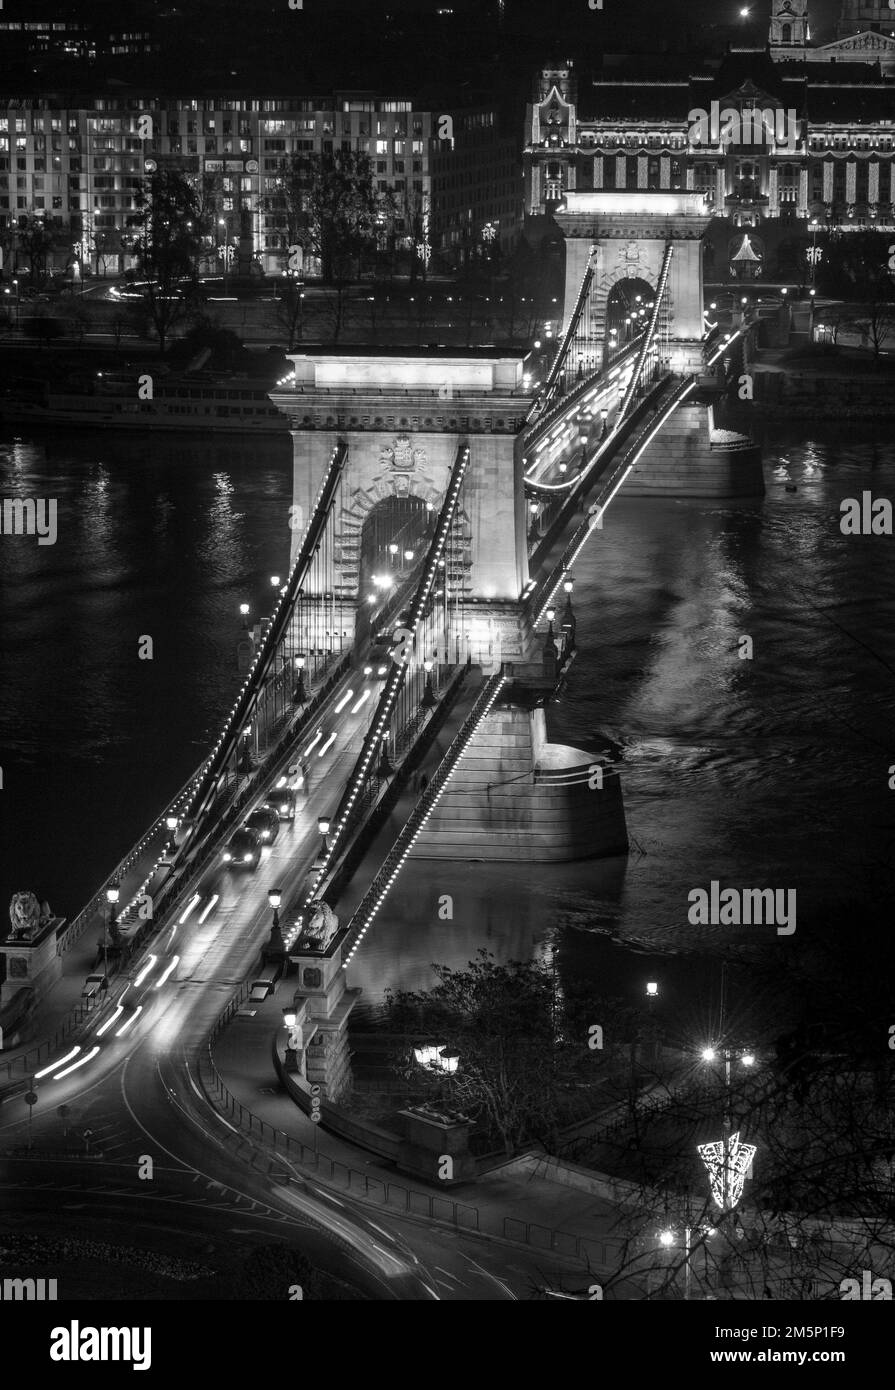 Vue monochrome du pont de la chaîne Szechenyi qui traverse le Danube entre Buda et Pest, Budapest, Hongrie, Europe. Banque D'Images